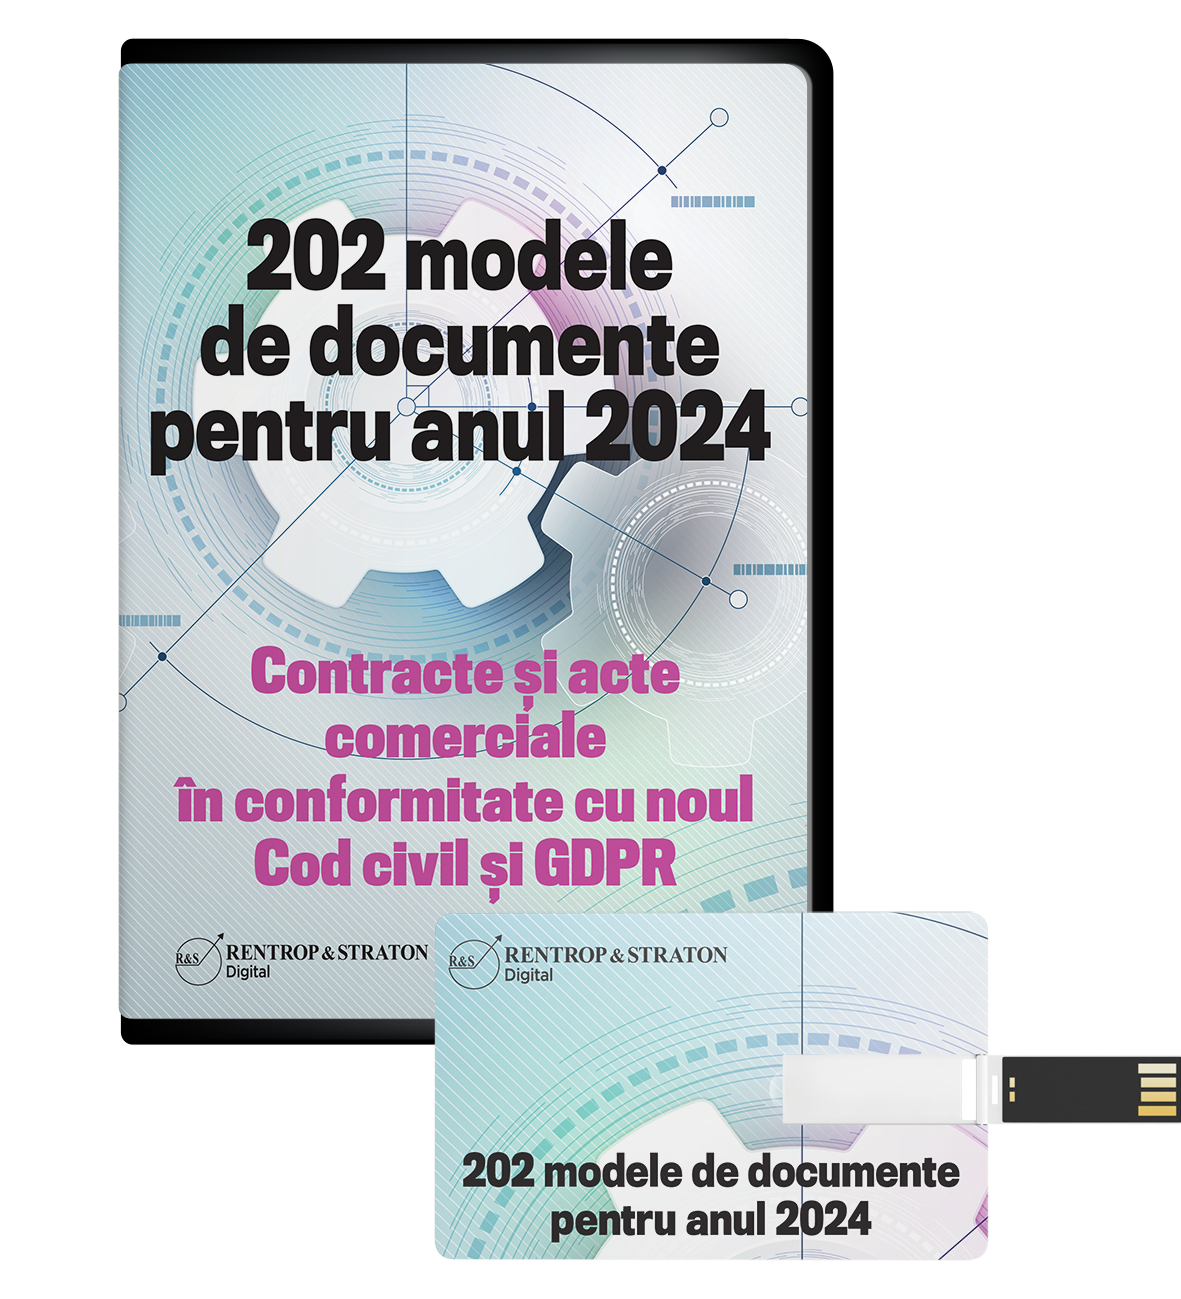 202 modele de documente pentru anul 2023